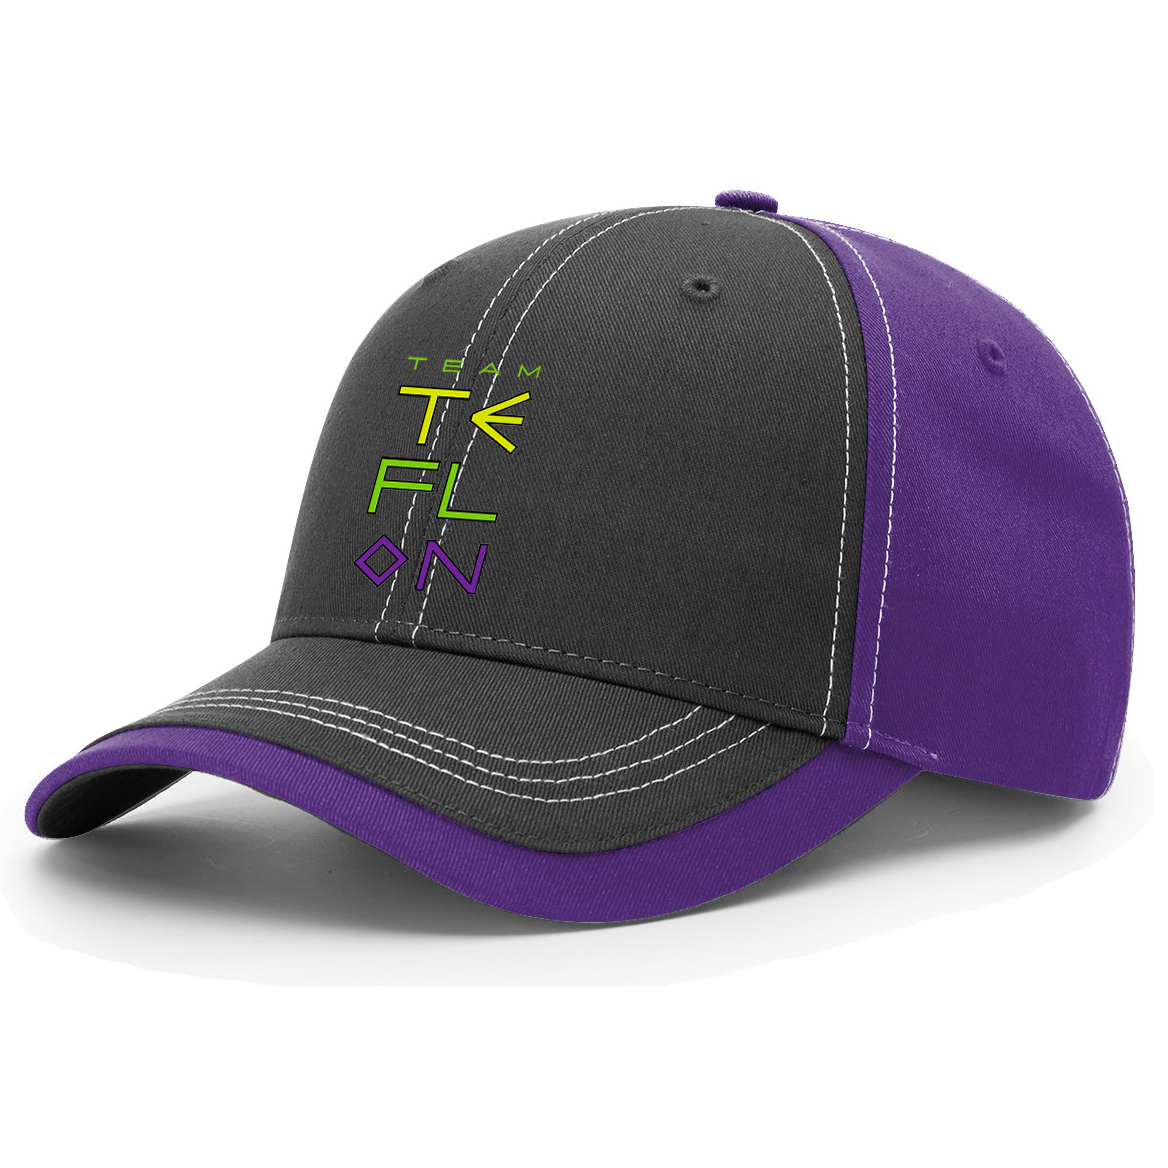 Team Teflon Softball Contrast Cap